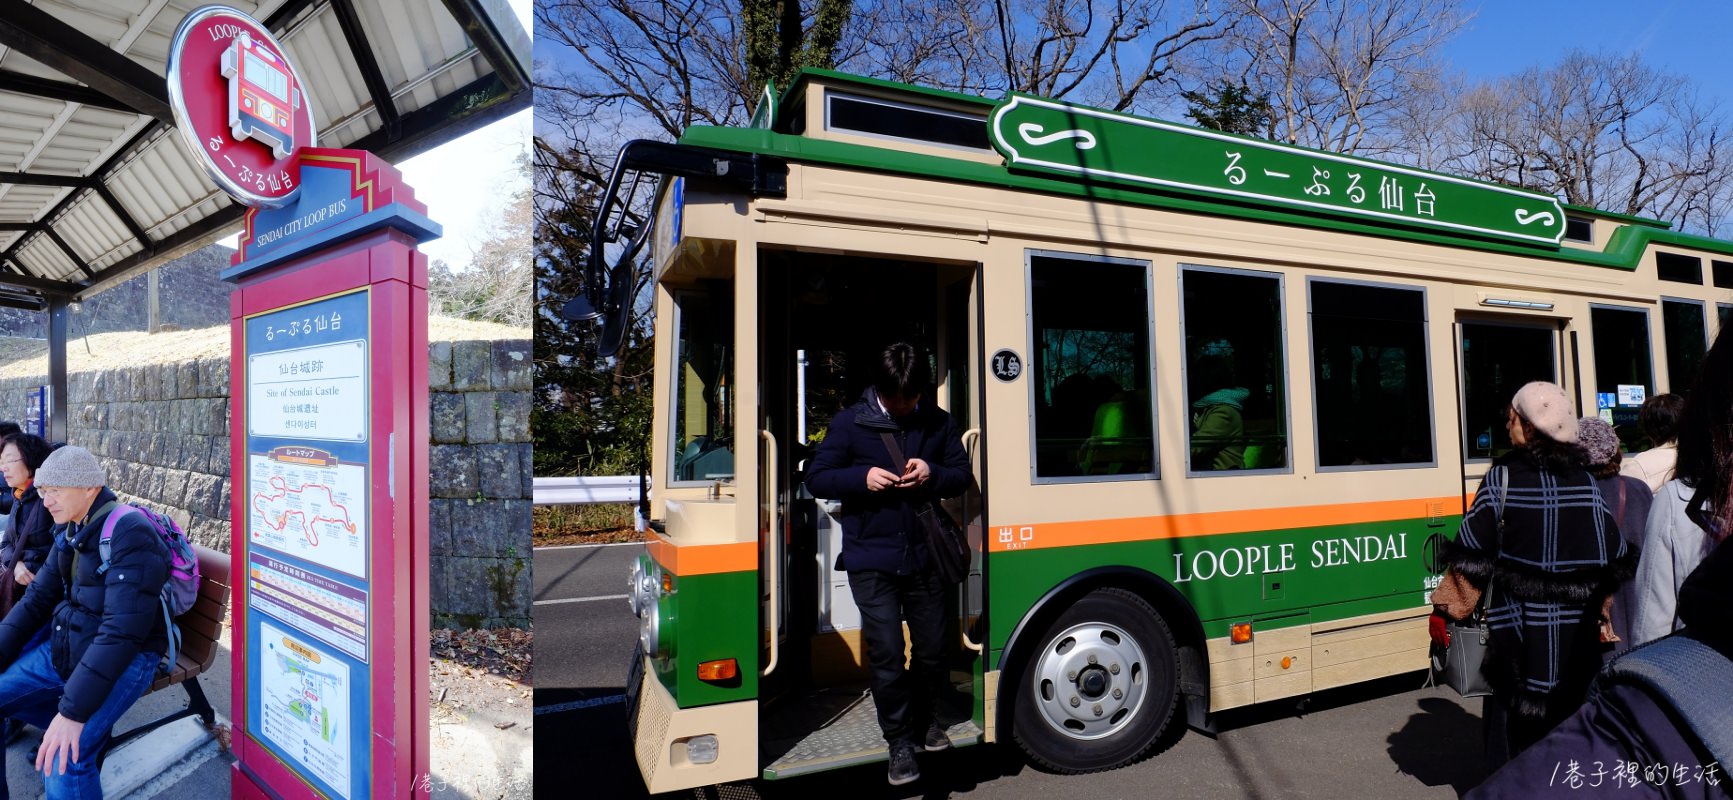 日本東北 仙台觀光三種交通券介紹 市區推薦loople 觀光巴士 一日近郊sendai Area Pass 兩日券marugoto Pass 巷子裡的生活